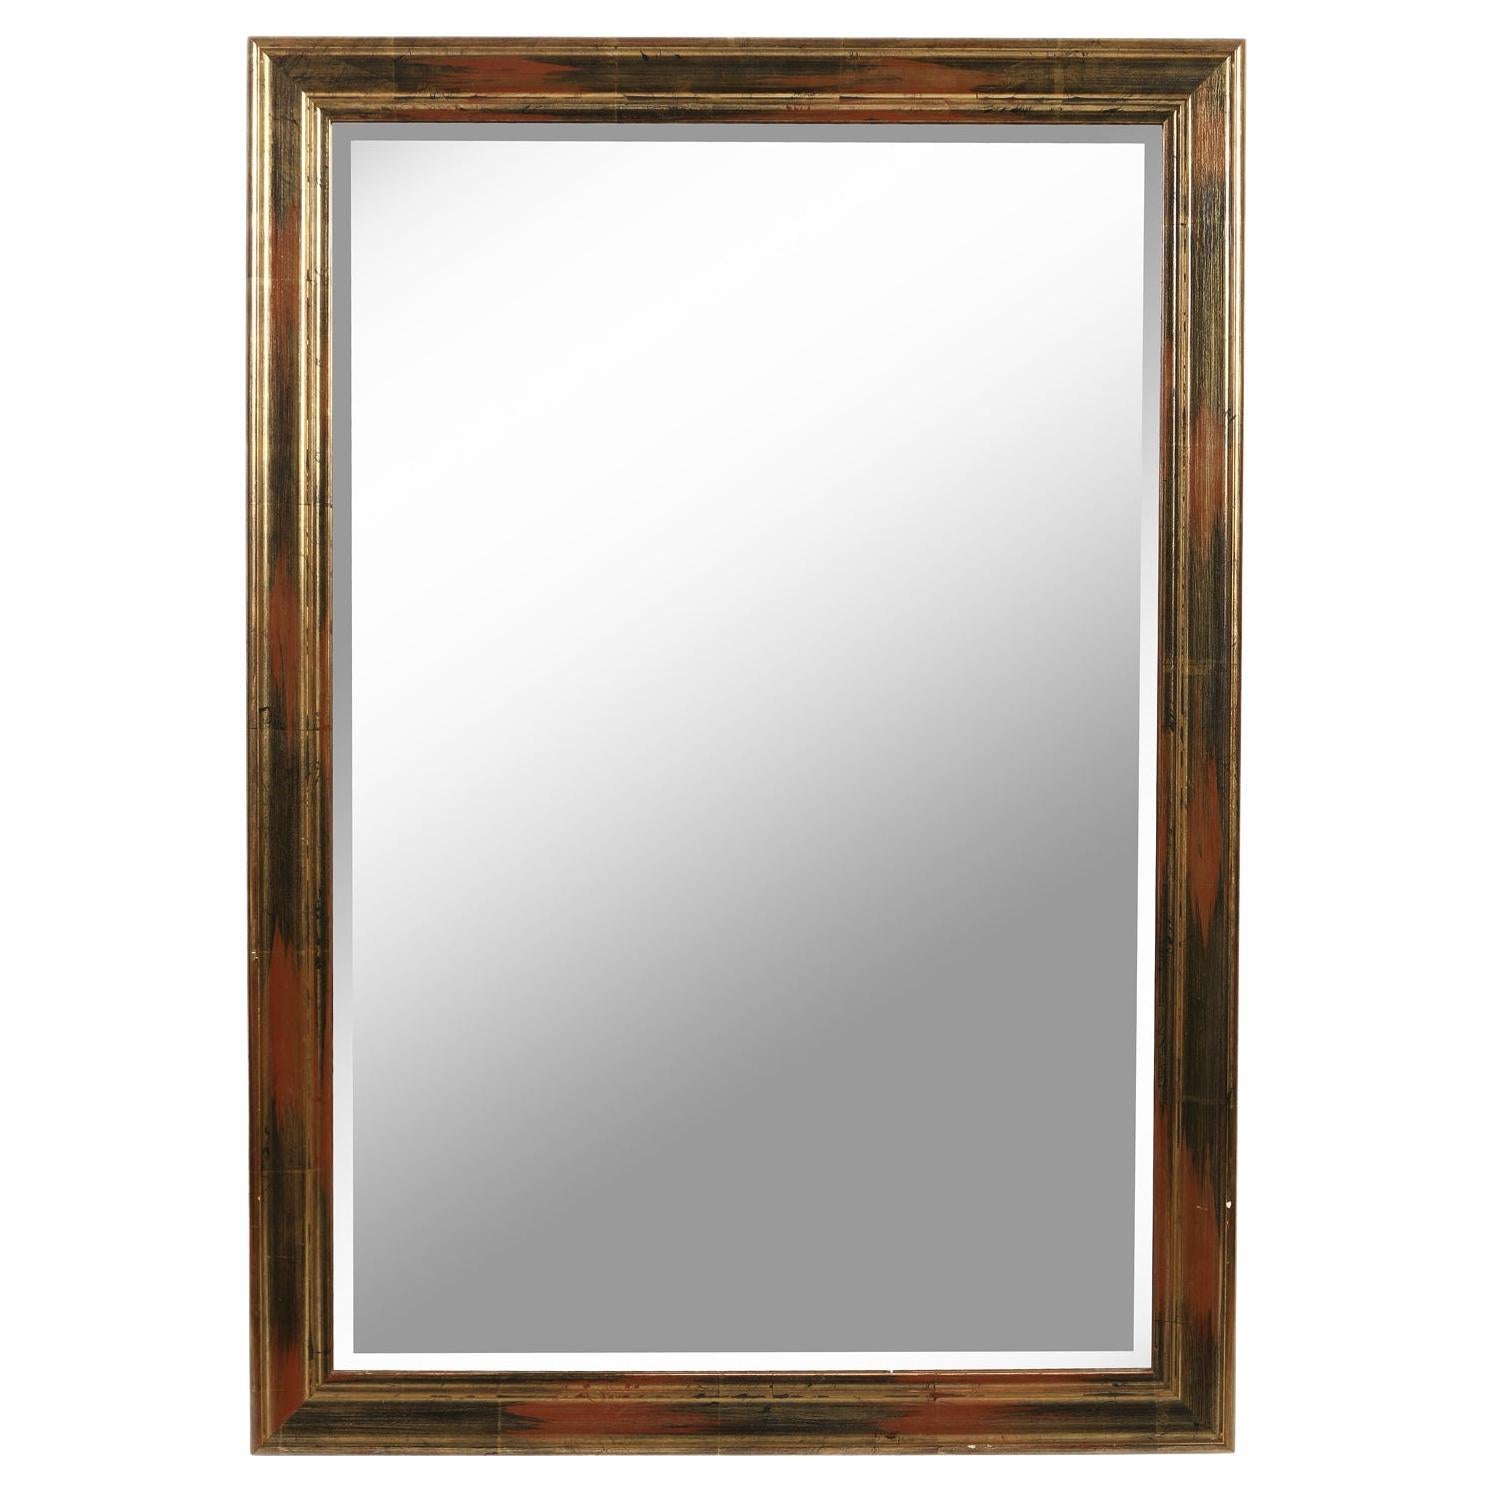 Miroir rectangulaire biseauté à la feuille d'or avec des nuances noires et rouges